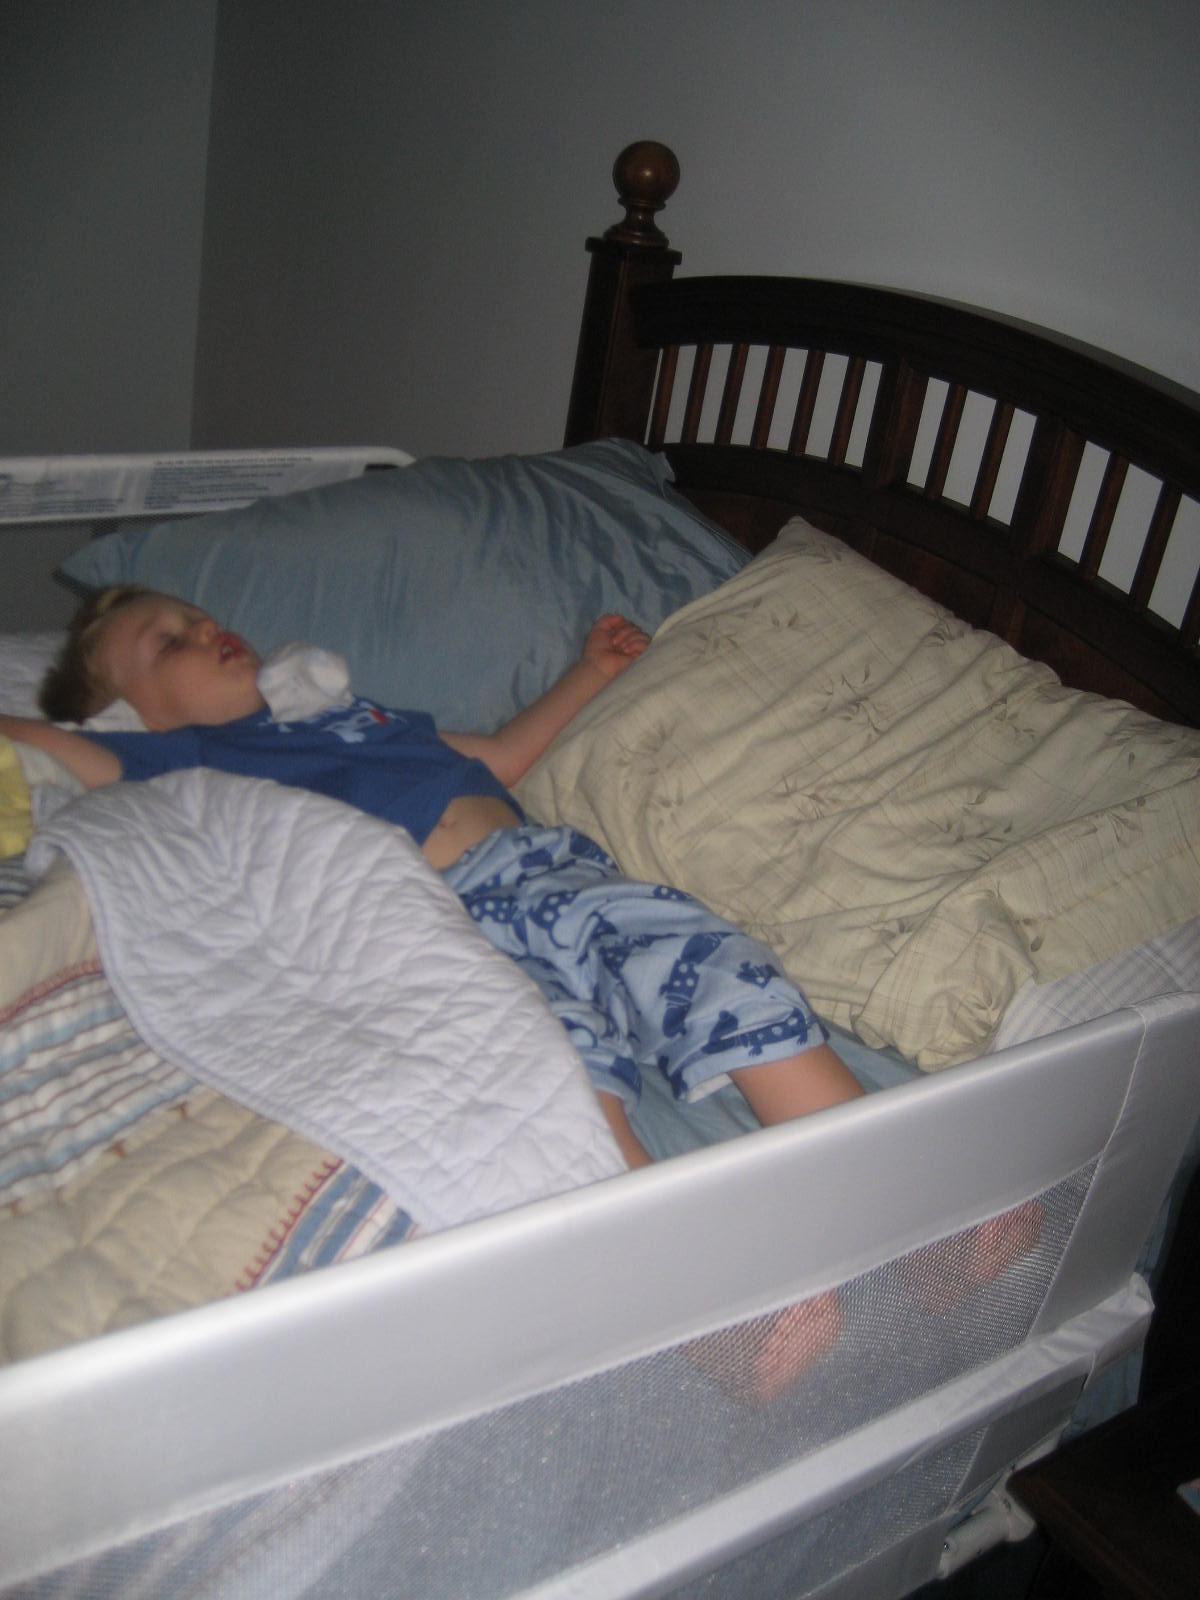 [Ryan+&+Big+Boy+Bed+001.jpg]